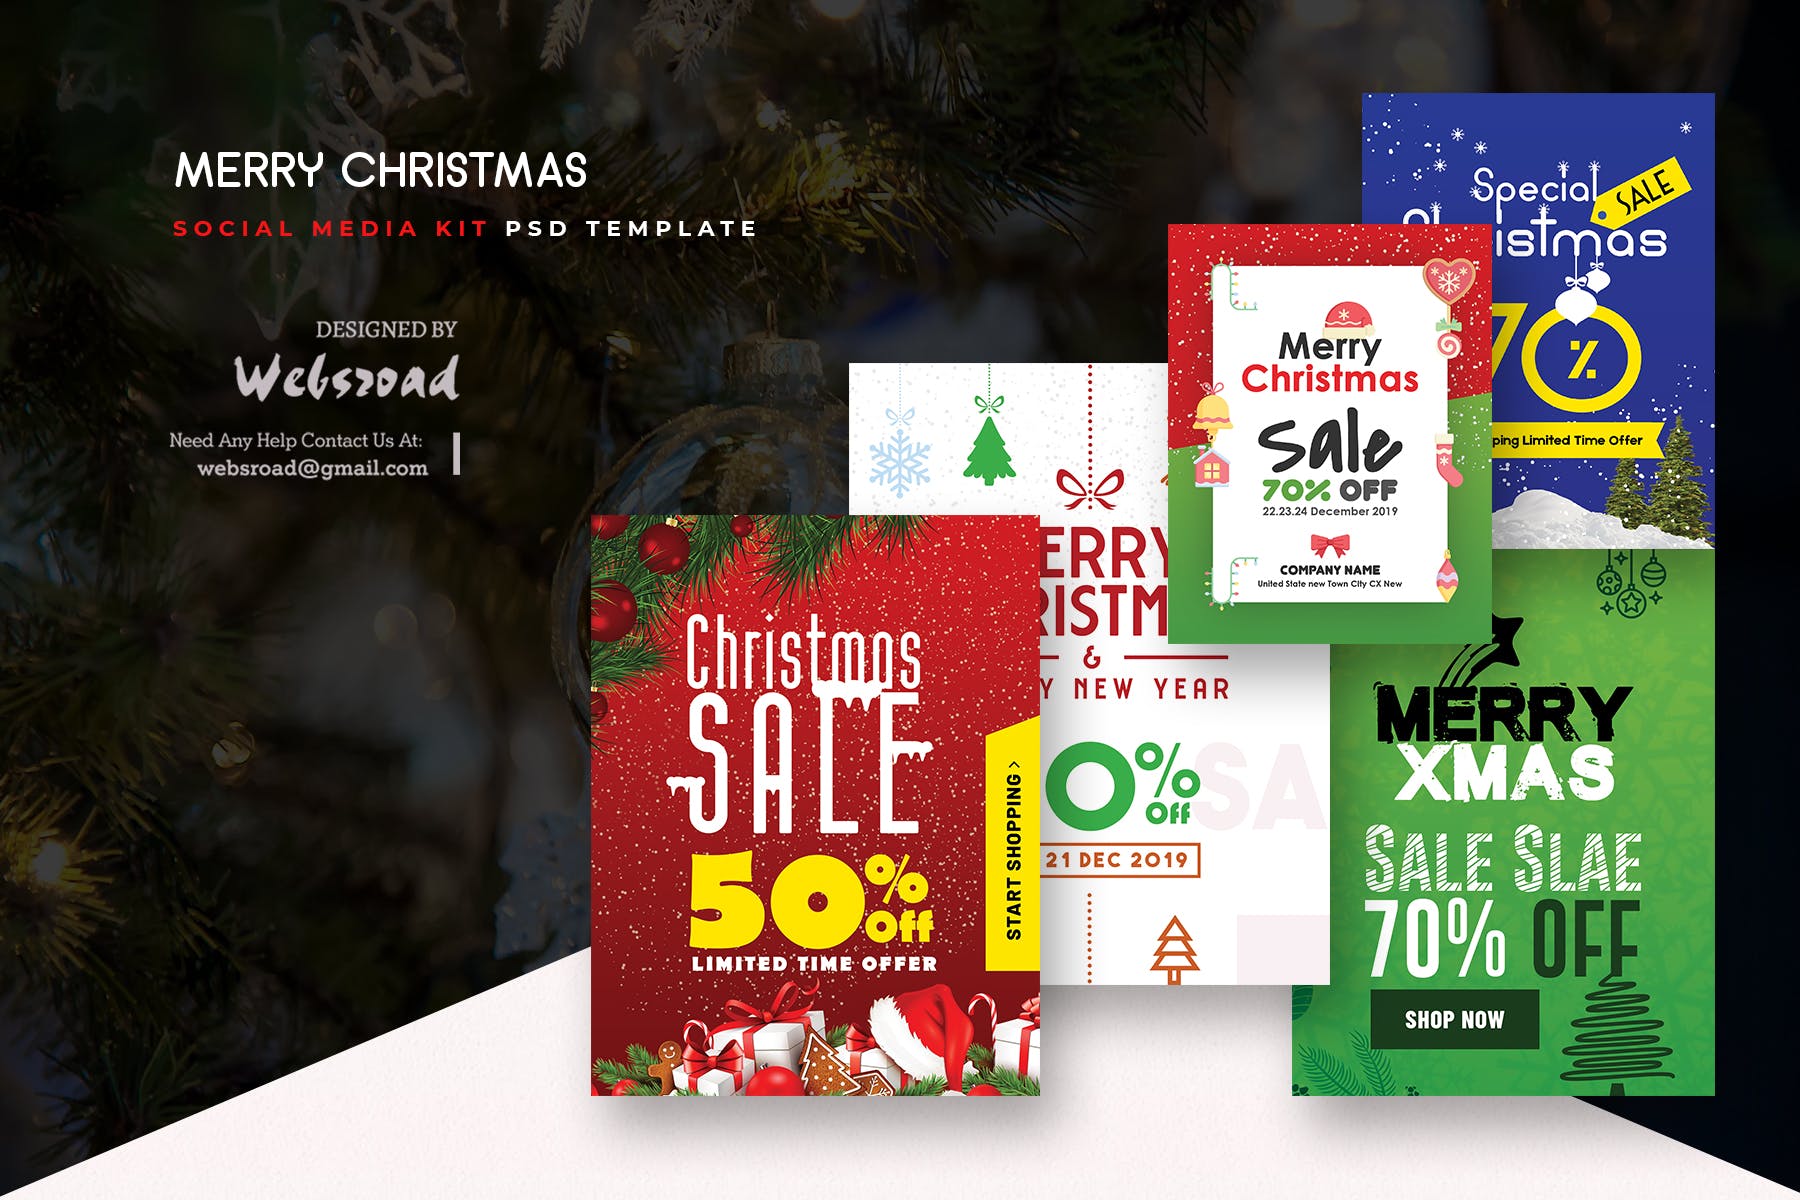 圣诞主题促销社交广告设计PSD模板素材库精选 Merry Christmas Social Media Kit PSD Templates插图